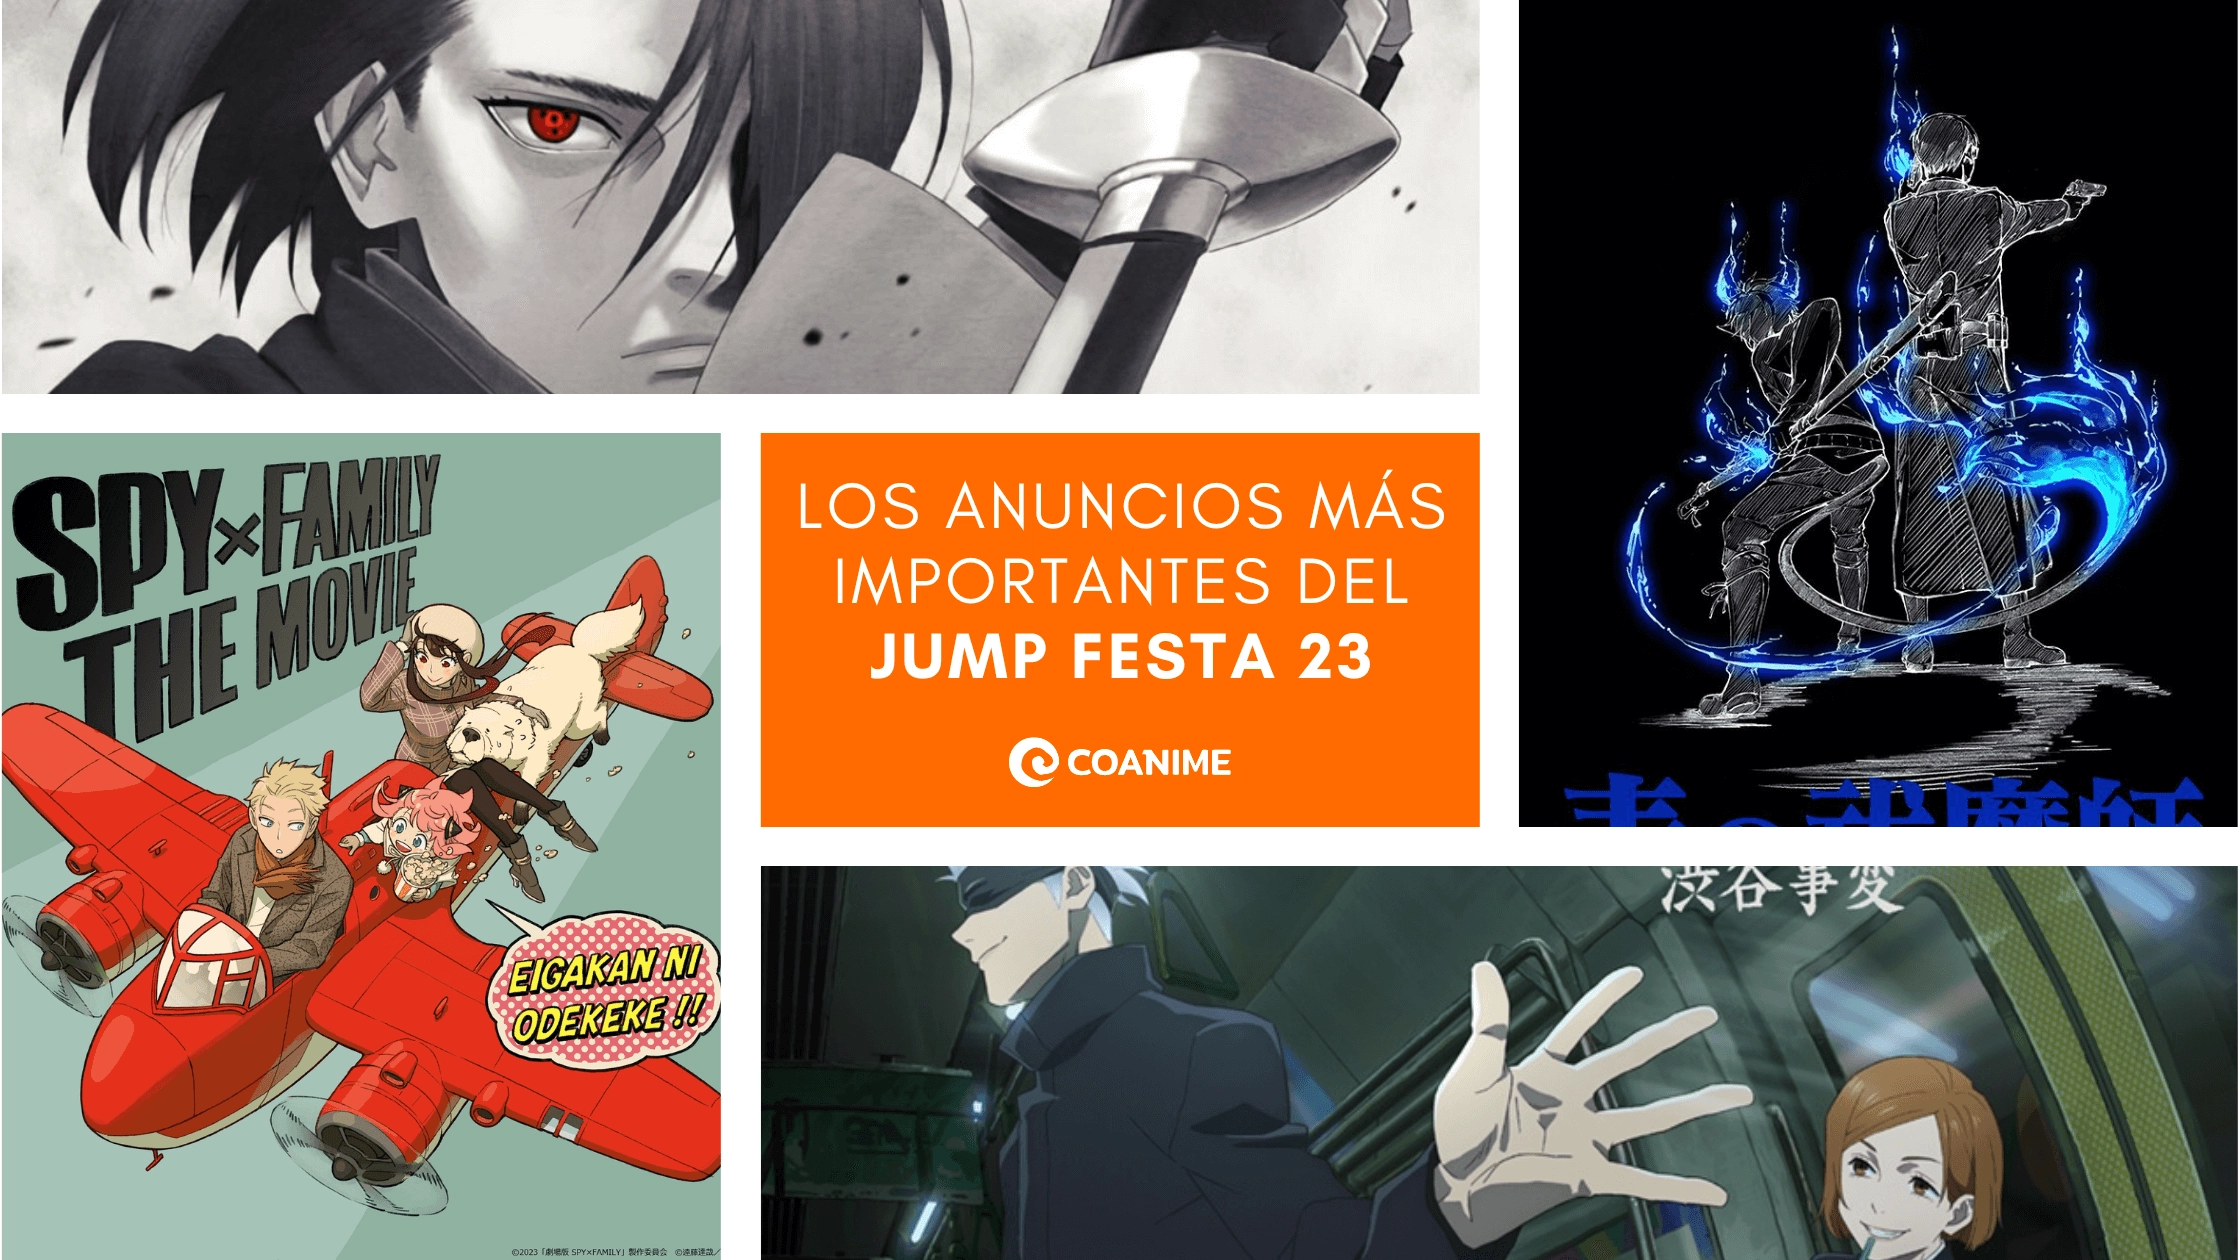 Los 5 anuncios más importantes del Jump Festa 23 - Coanime.net